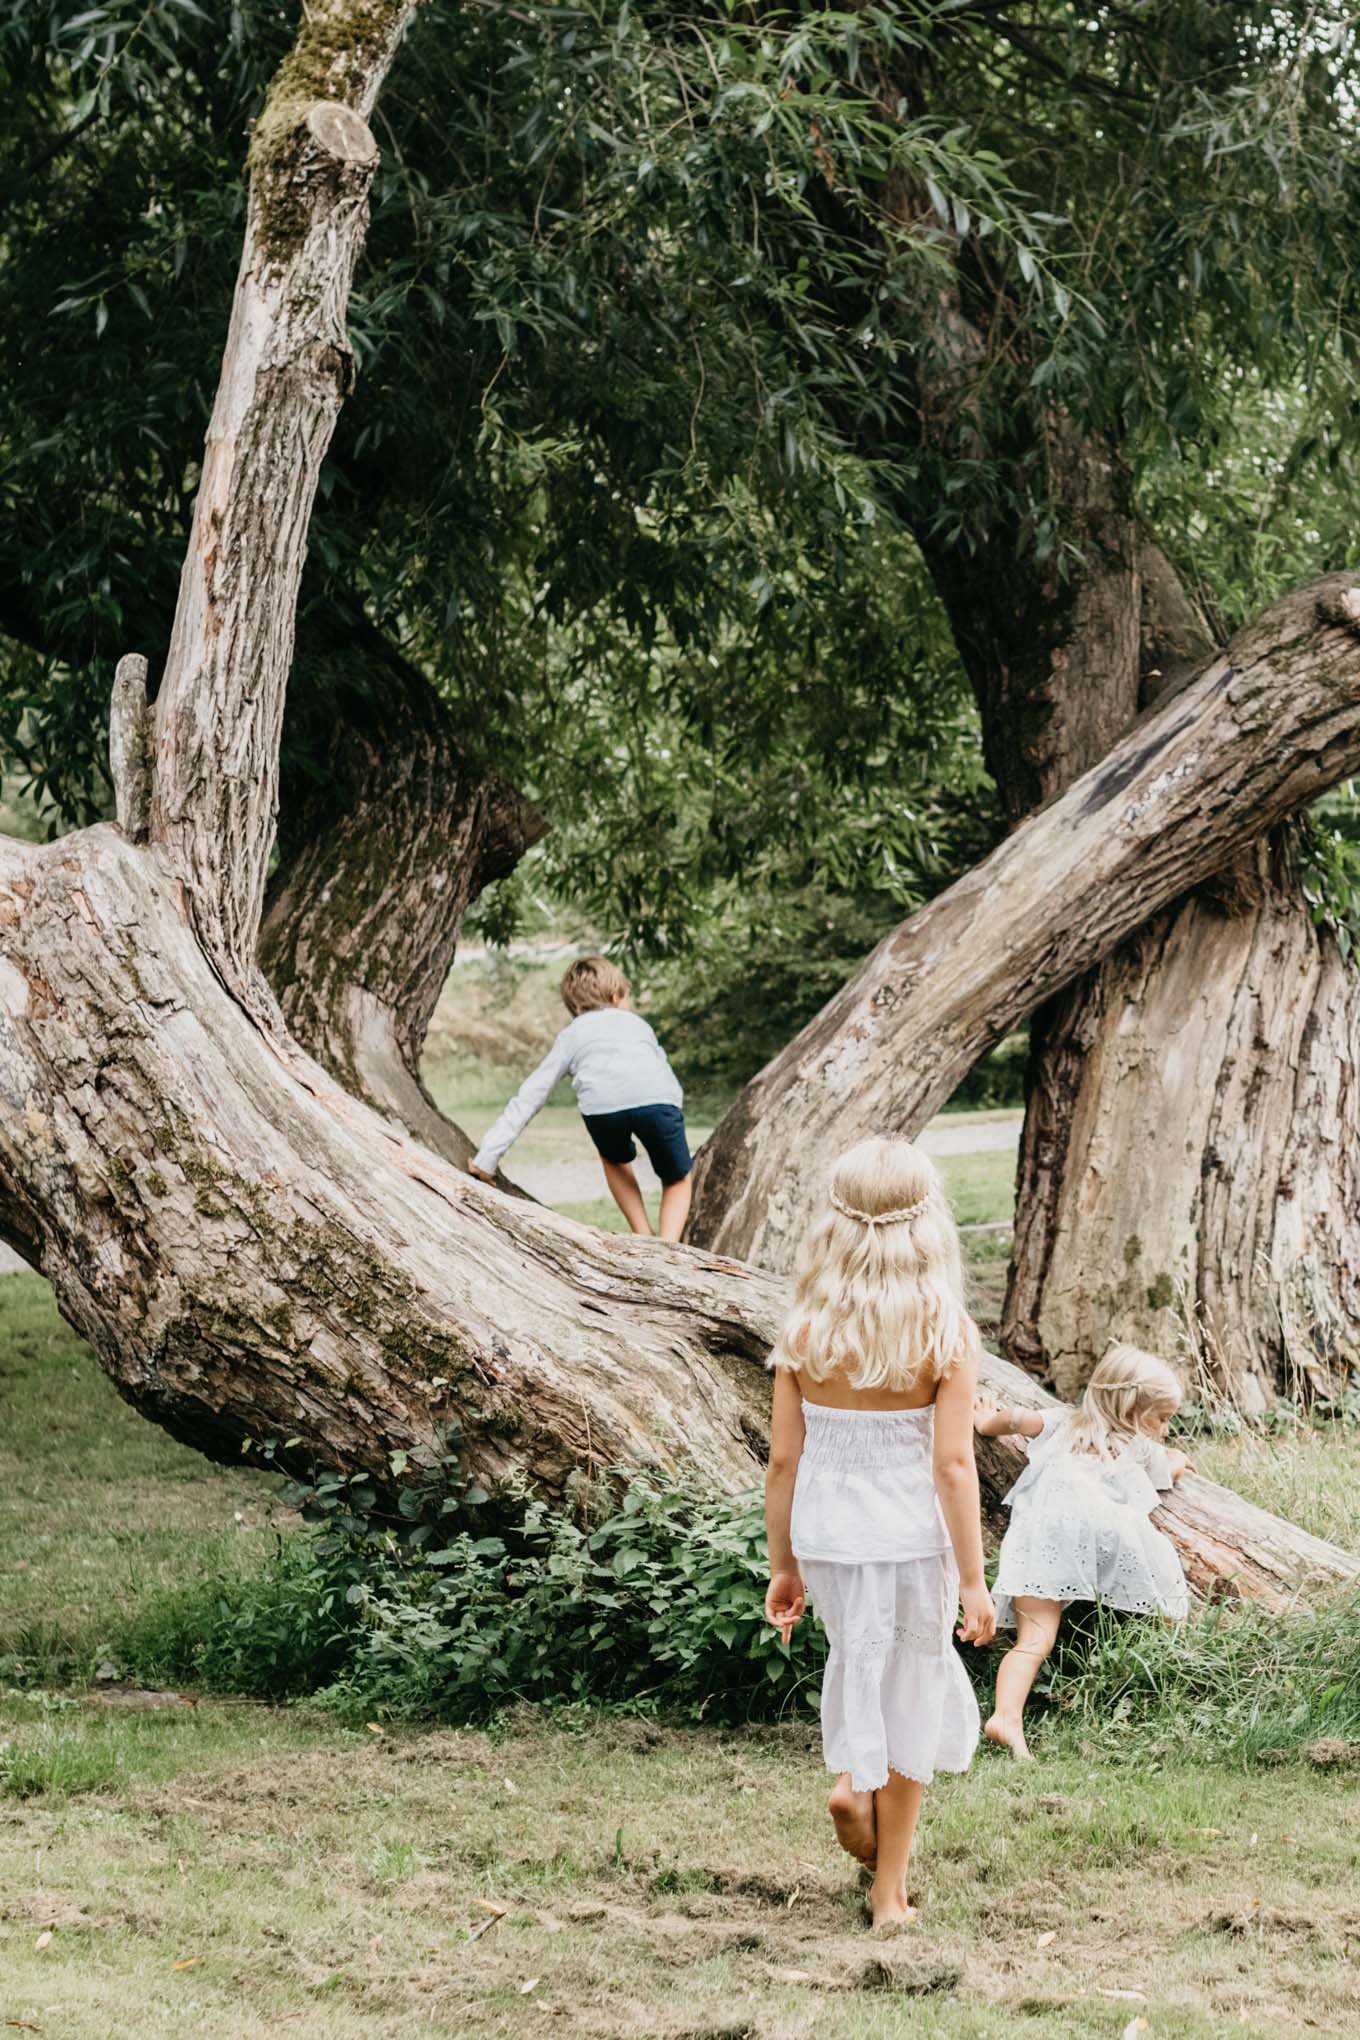 Barn klättar i pilträd